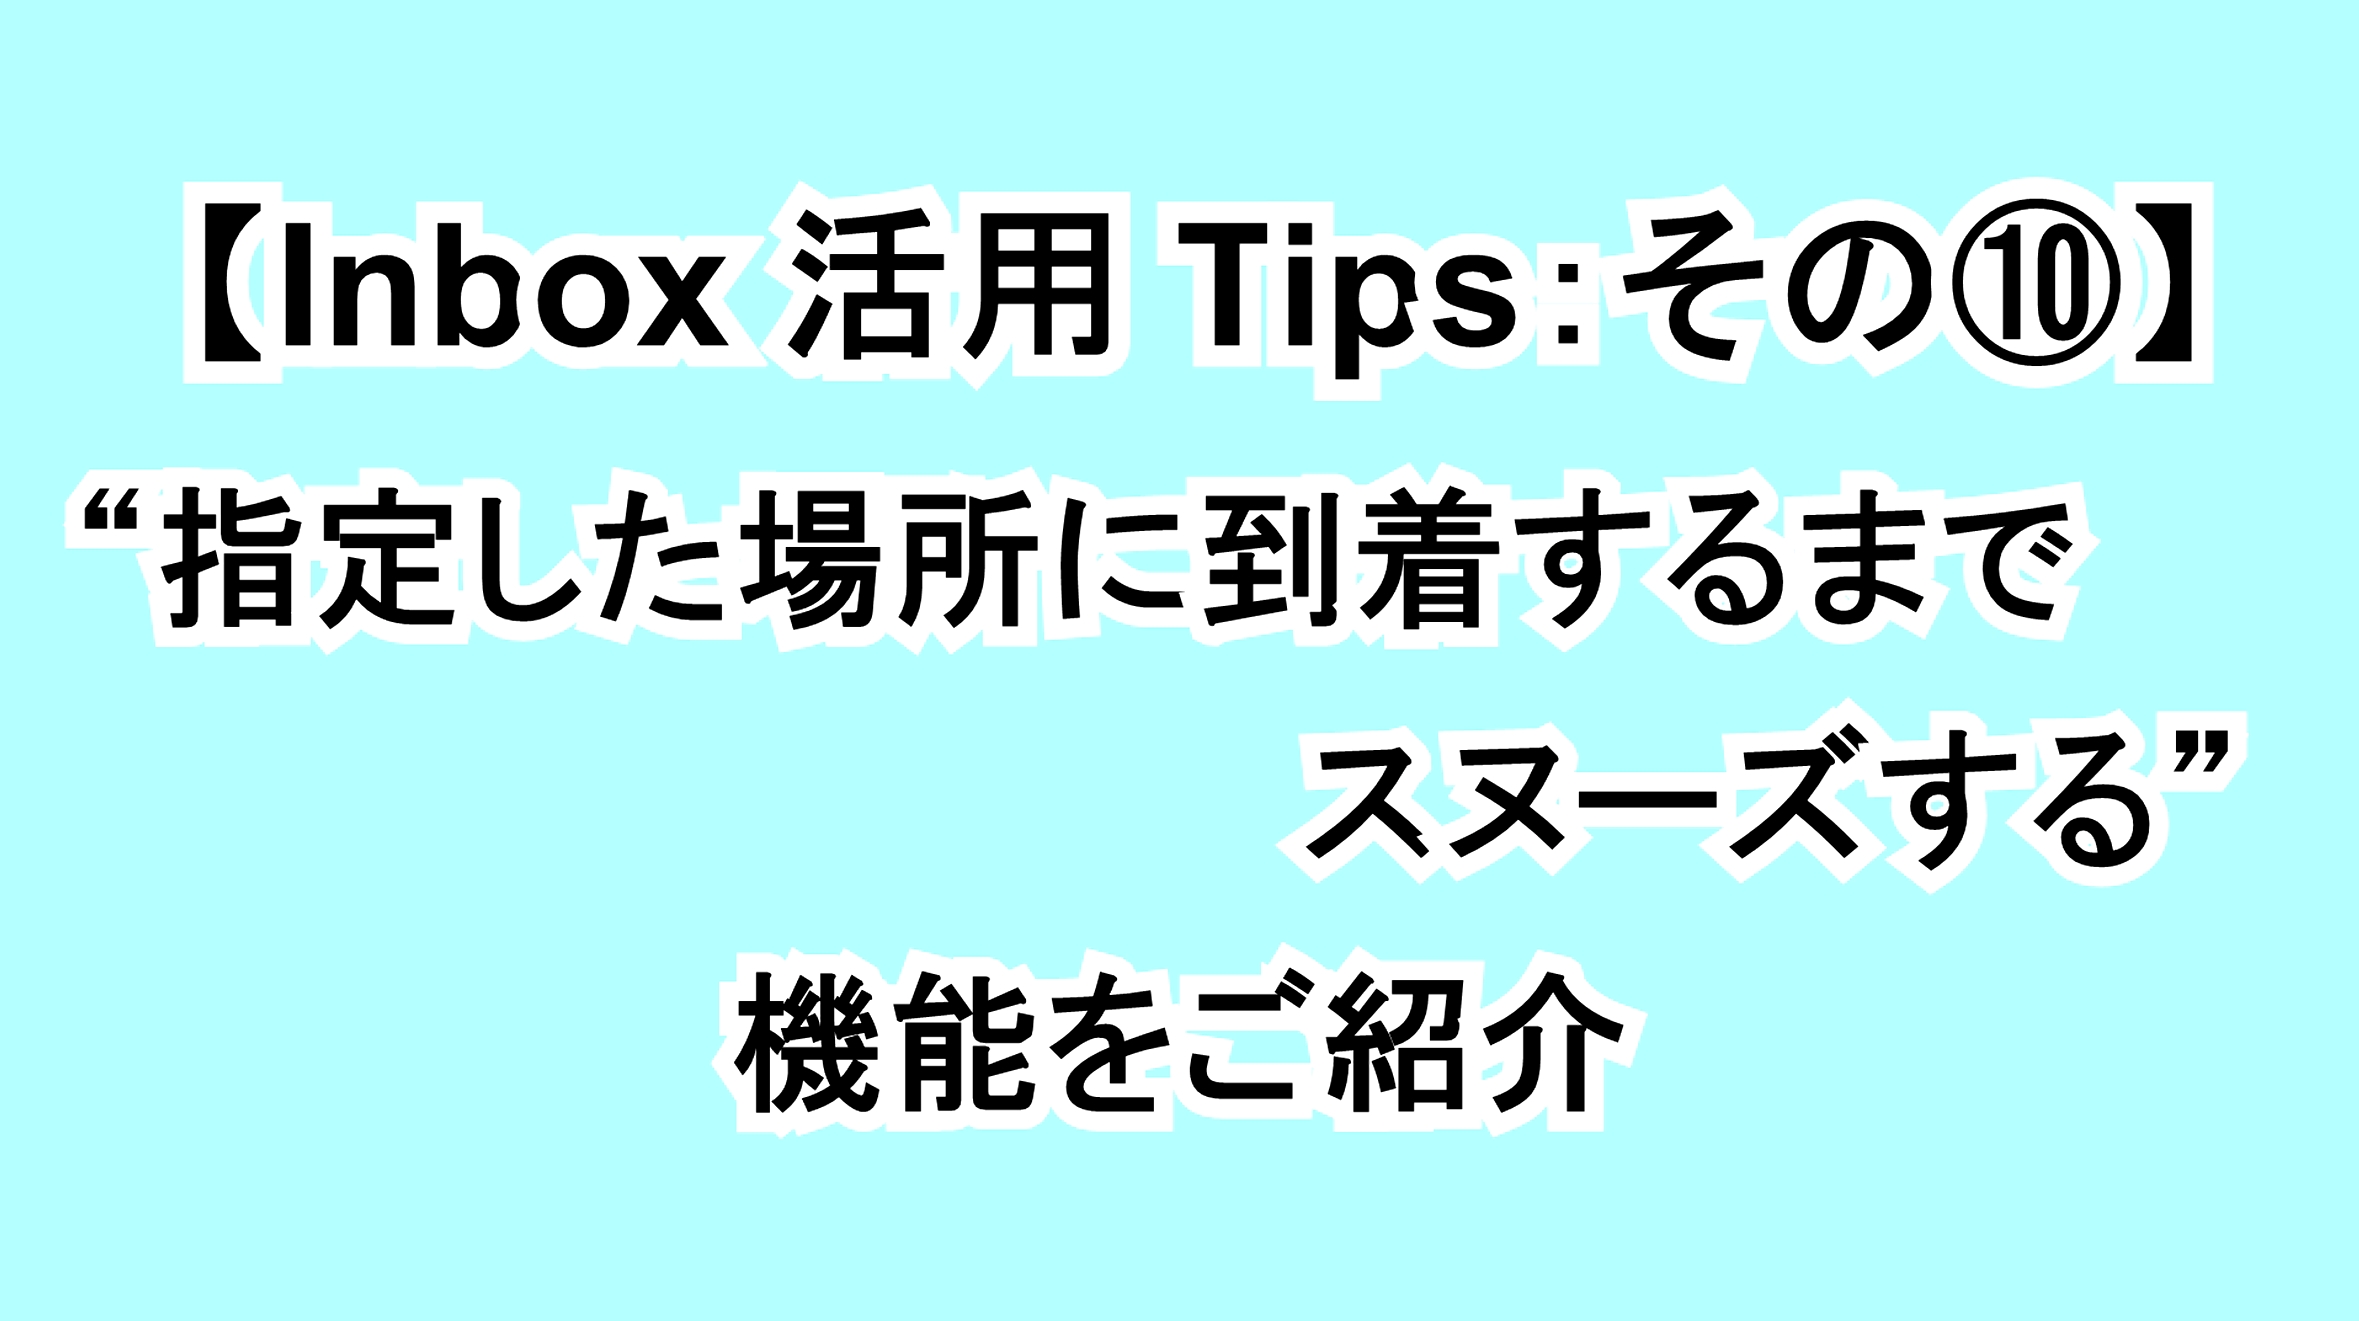 【Inbox活用Tips：その⑩】指定した場所に到着するまでスヌーズできる機能を解説